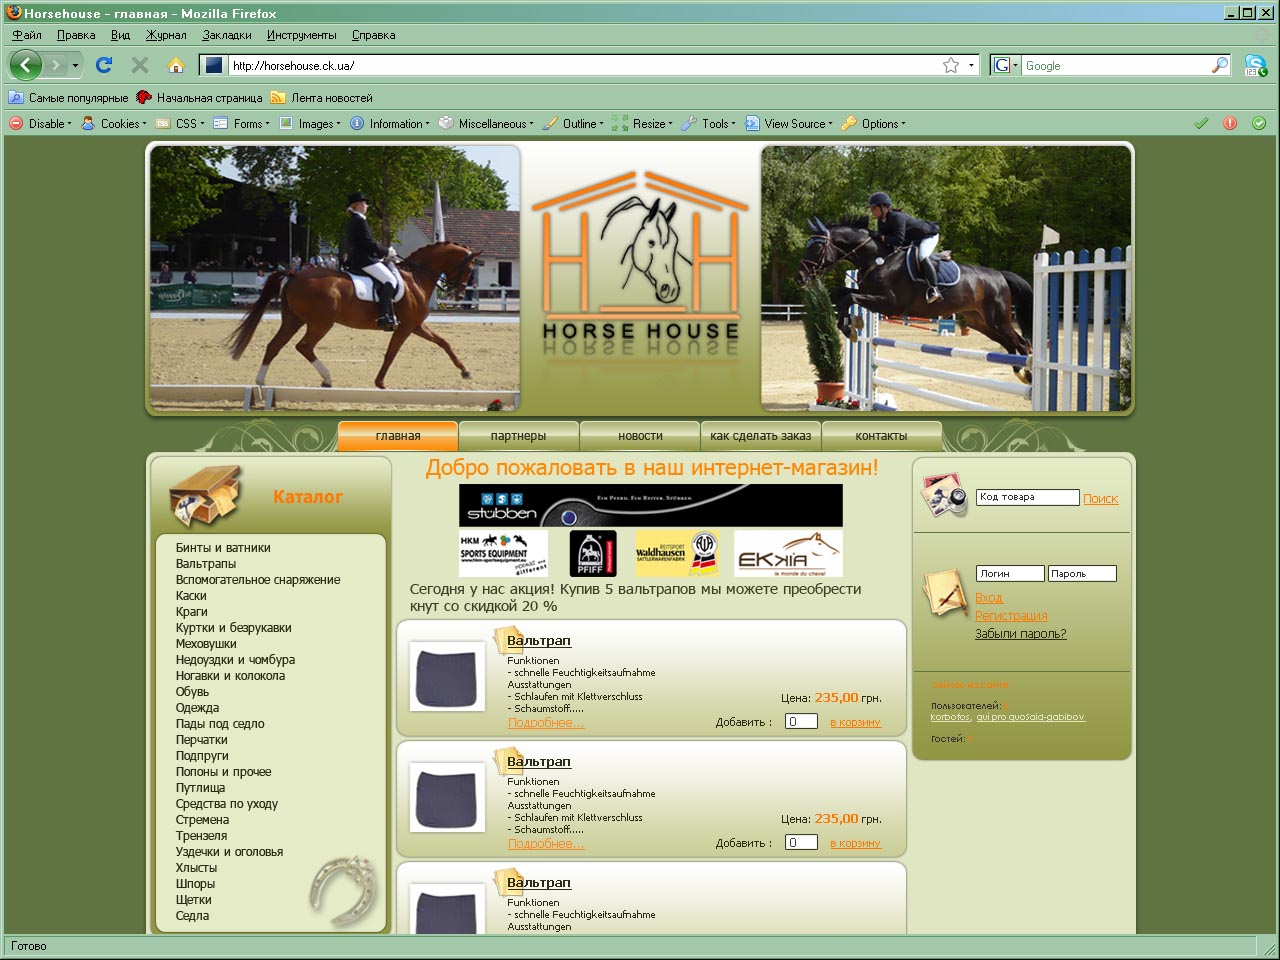 Дизайн сайта-магазина конных товаров